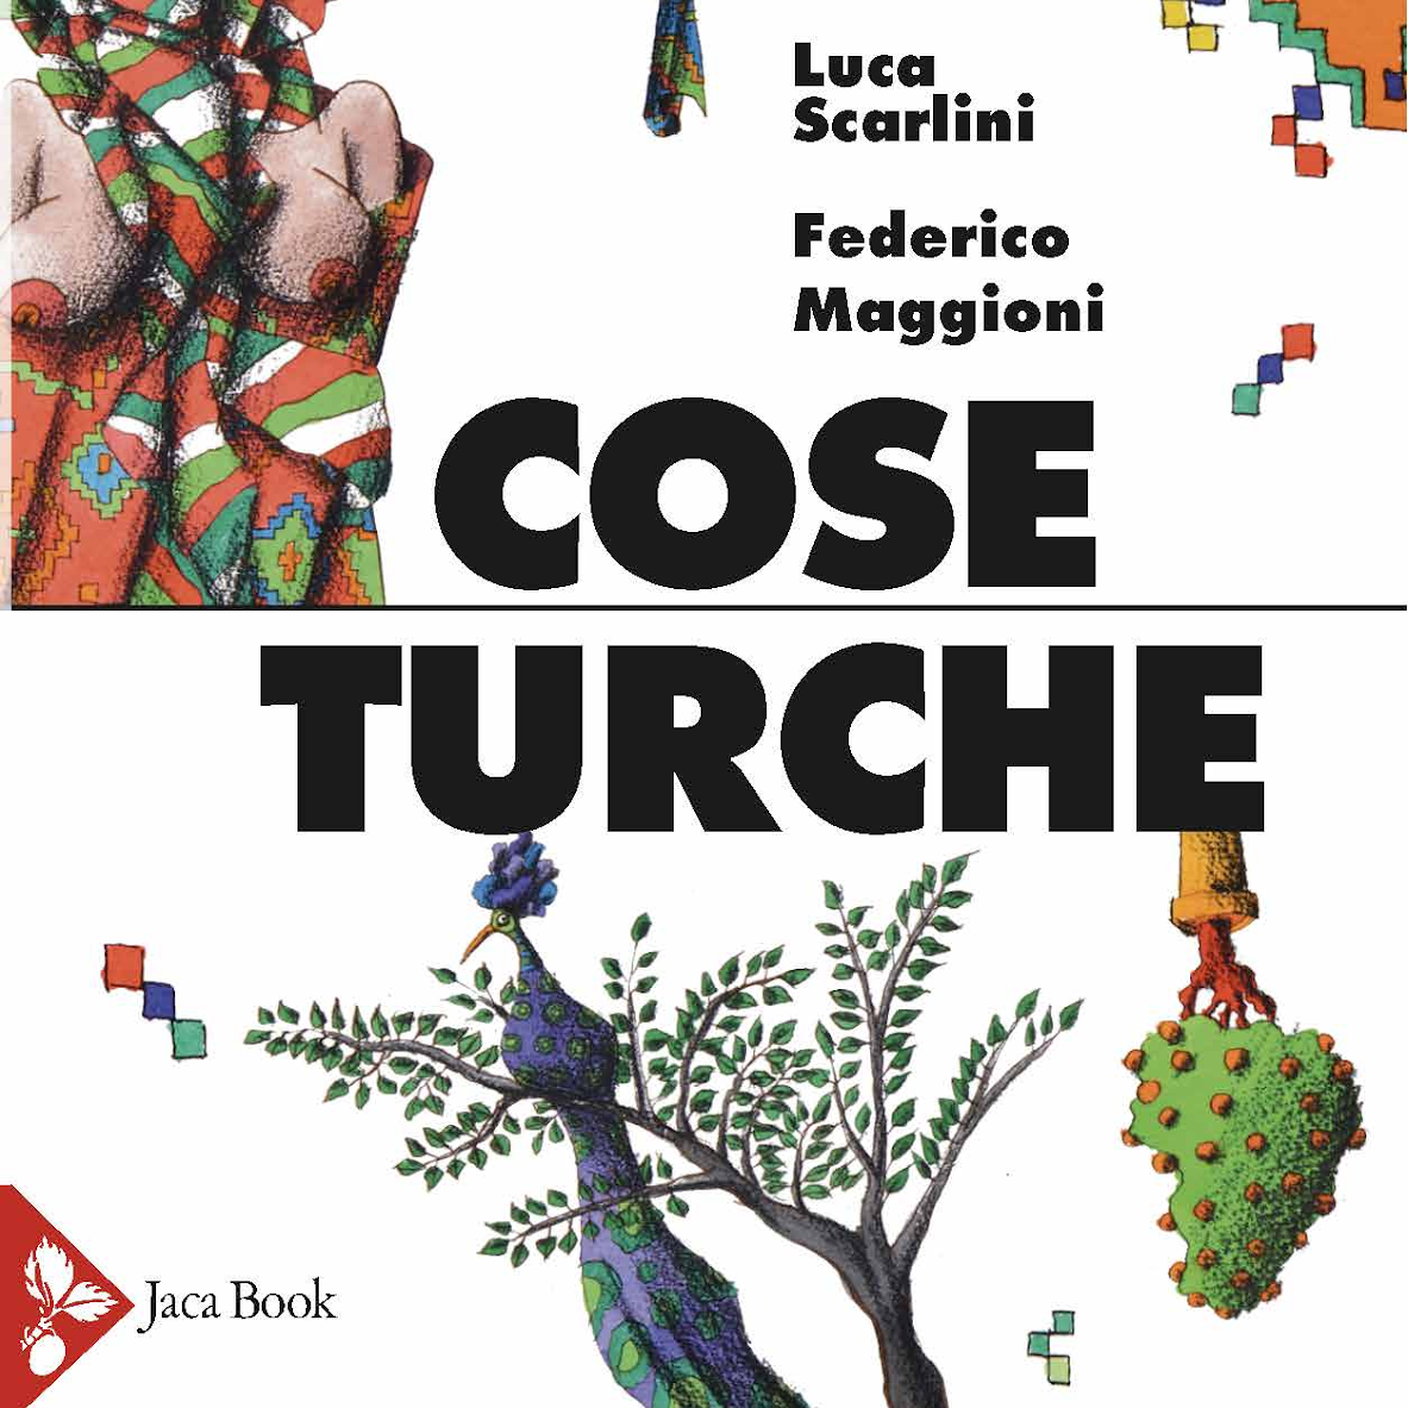 Luca Scarlini e Federico Maggioni, "Cose turche", Jaca Book (dettaglio copertina)